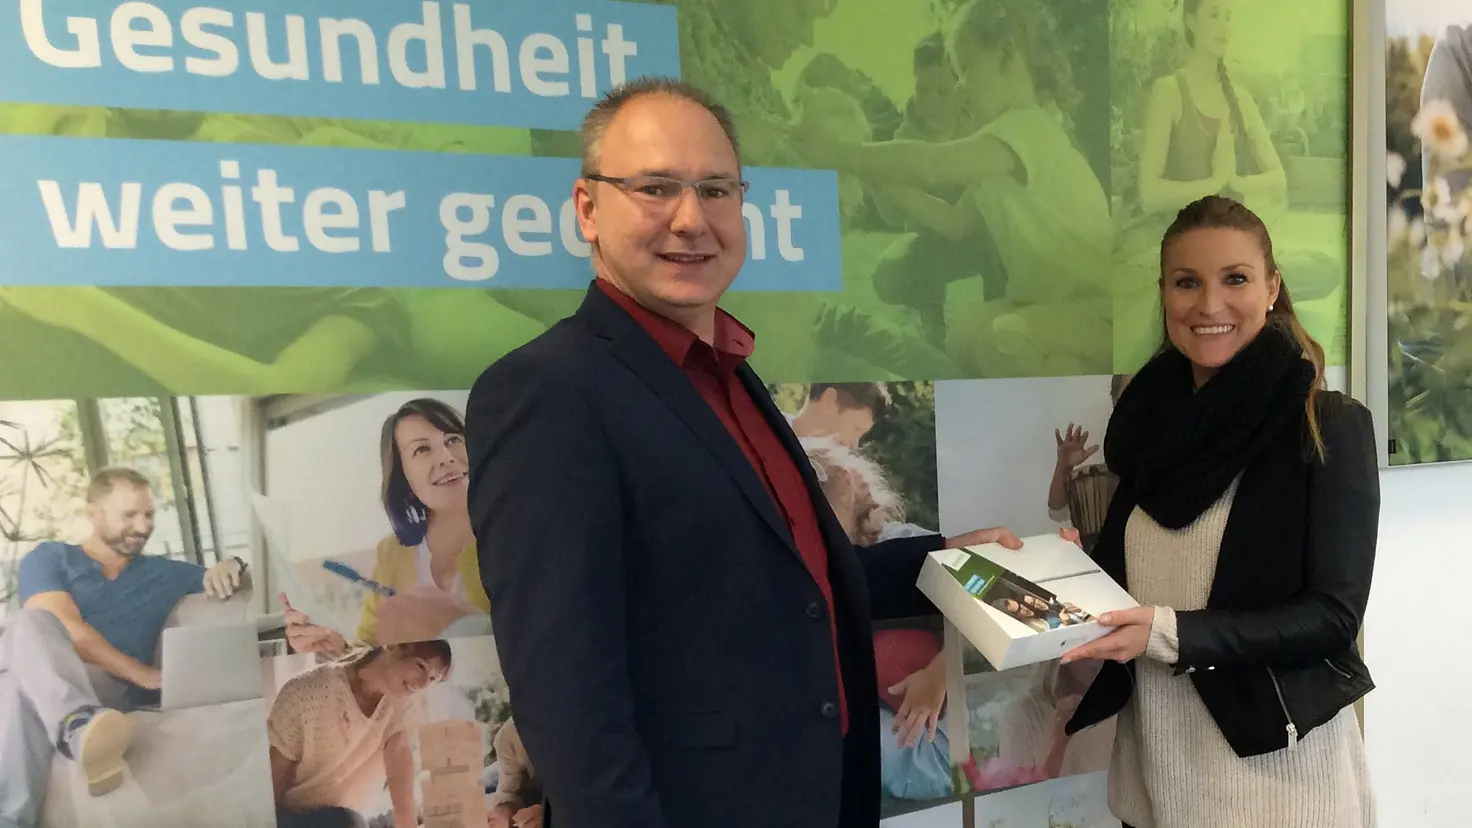 Preisübergabe in der Geschäftsstelle: Michael Wesche überreicht der Gewinnerin ihr neues iPad